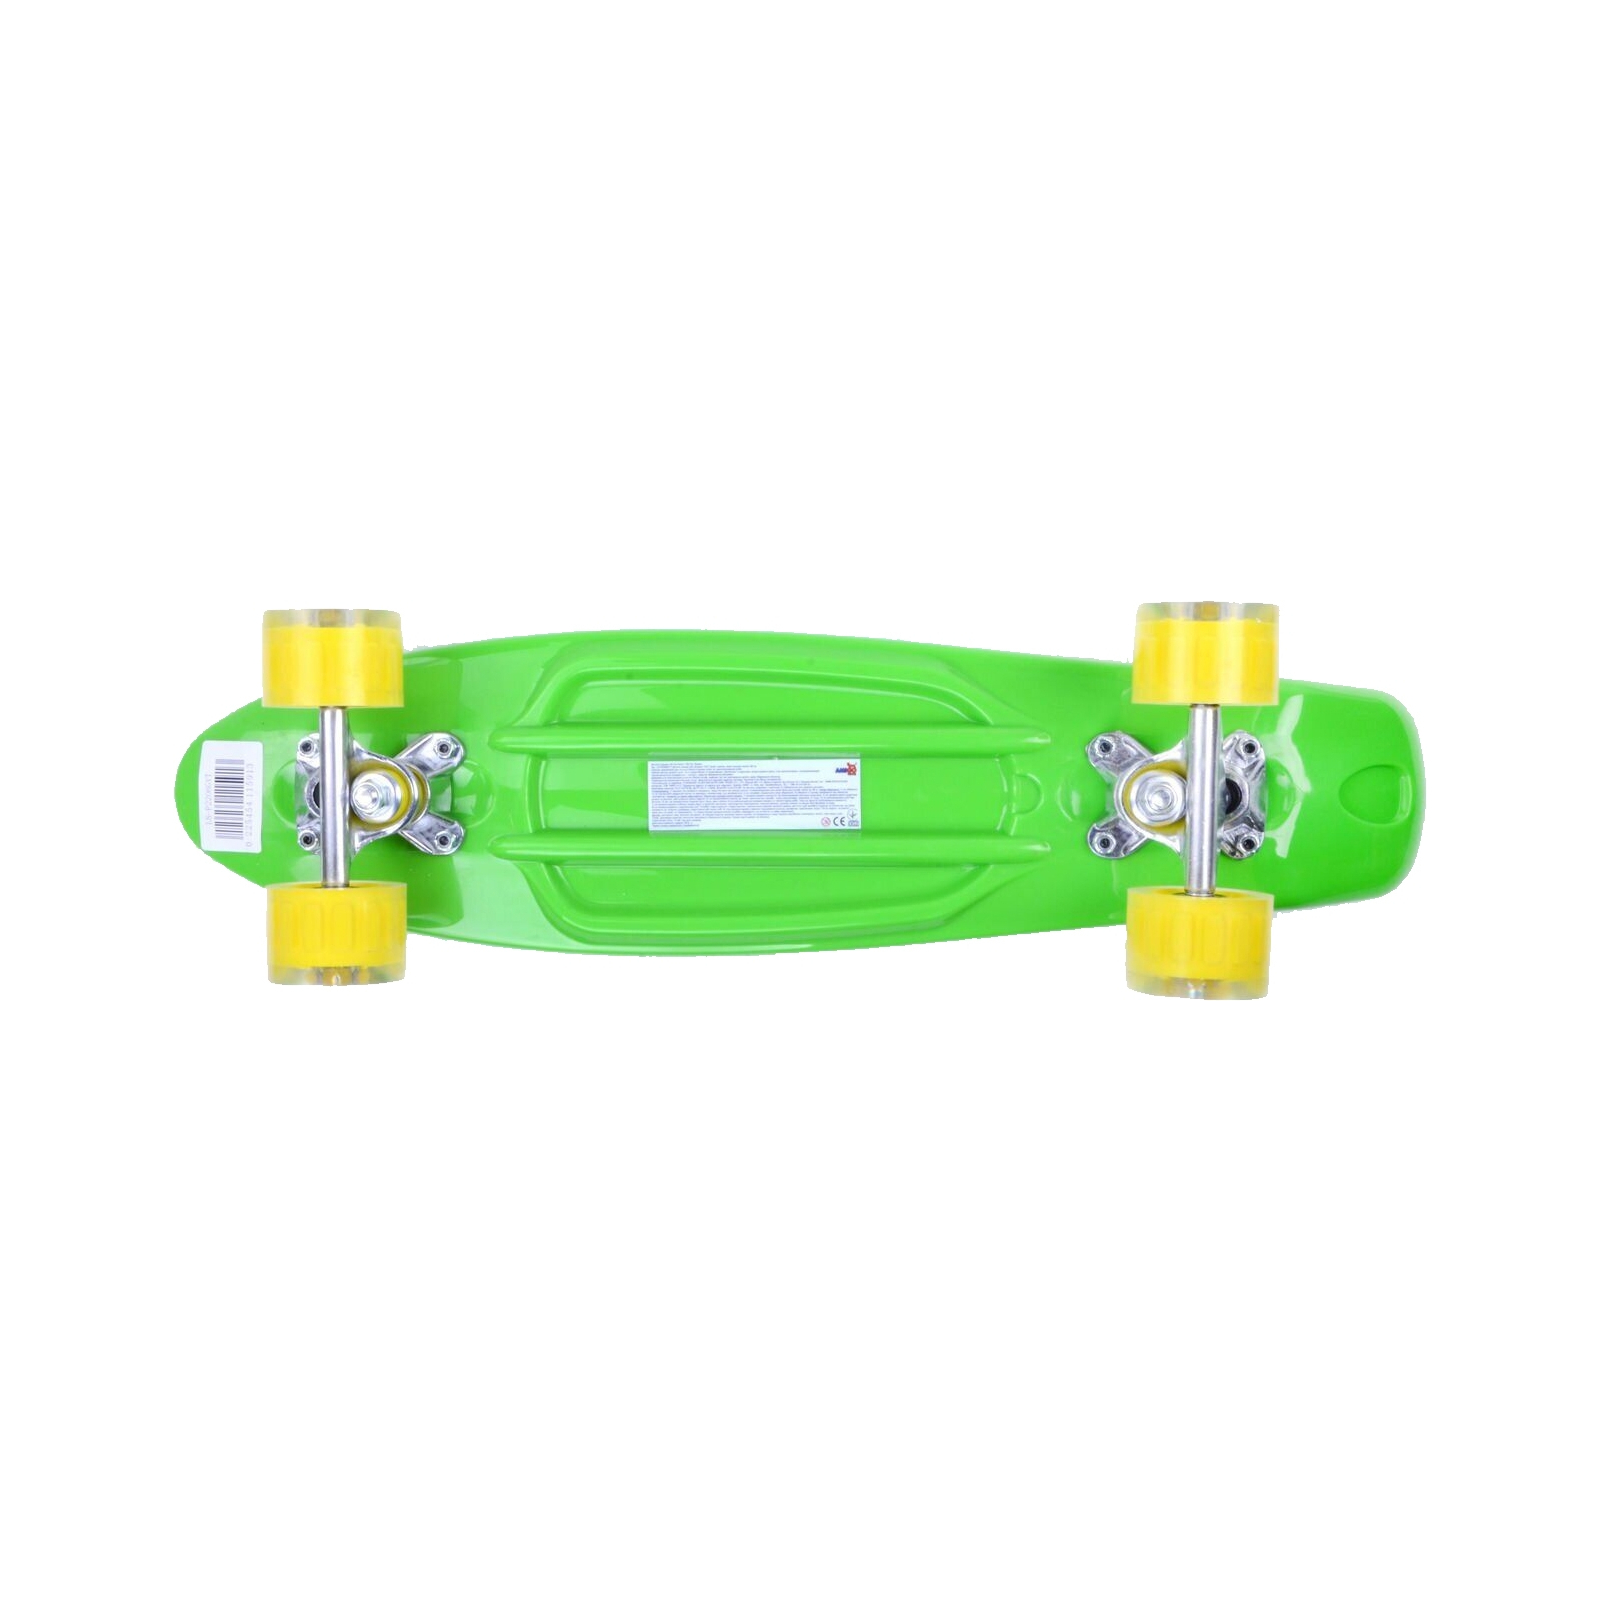 Скейтборд детский GO Travel Зеленый с желтыми колесами (LS-P2206GYT) изображение 3